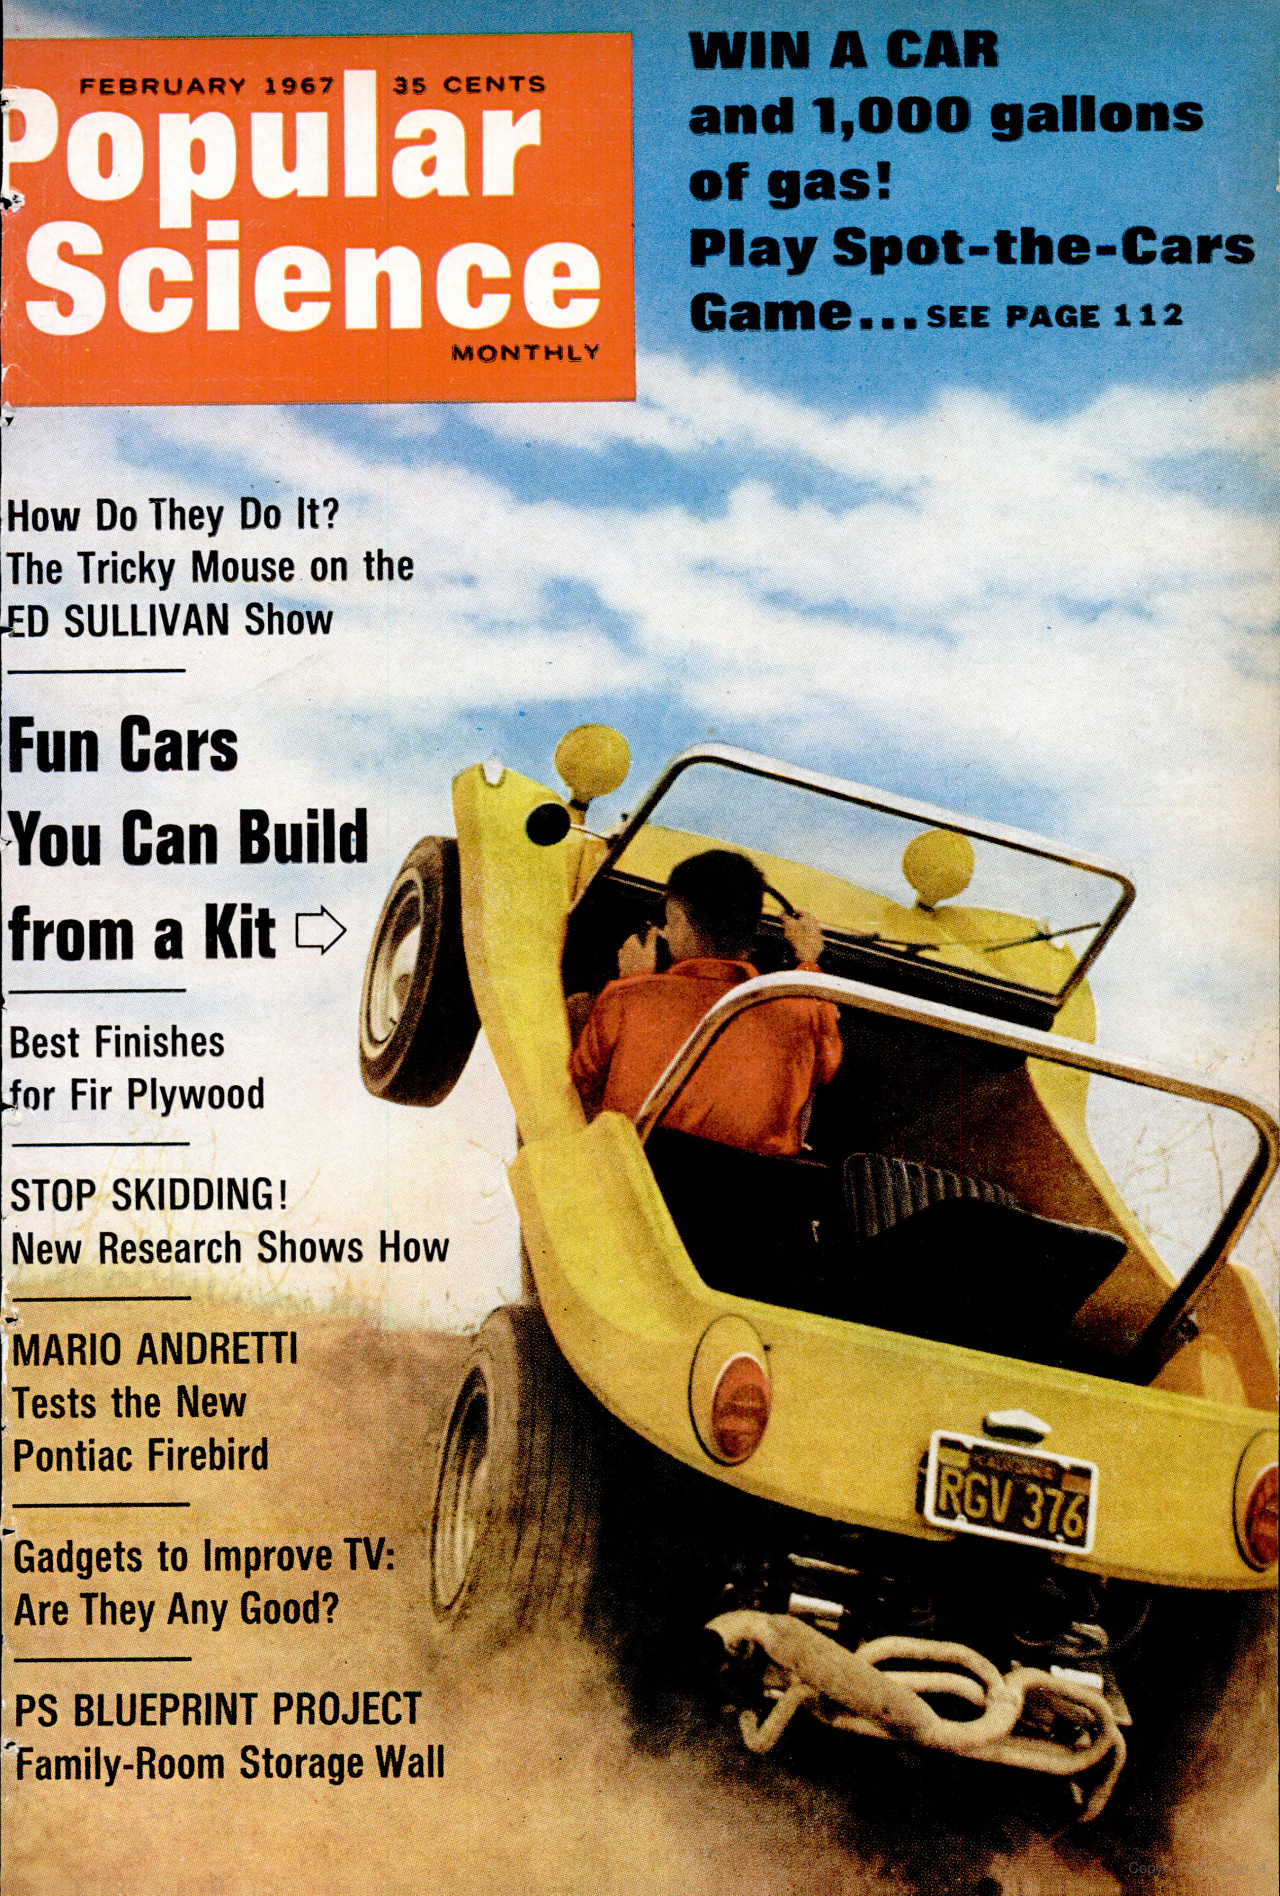 Обложка Popular Science, февраль 1967 г.